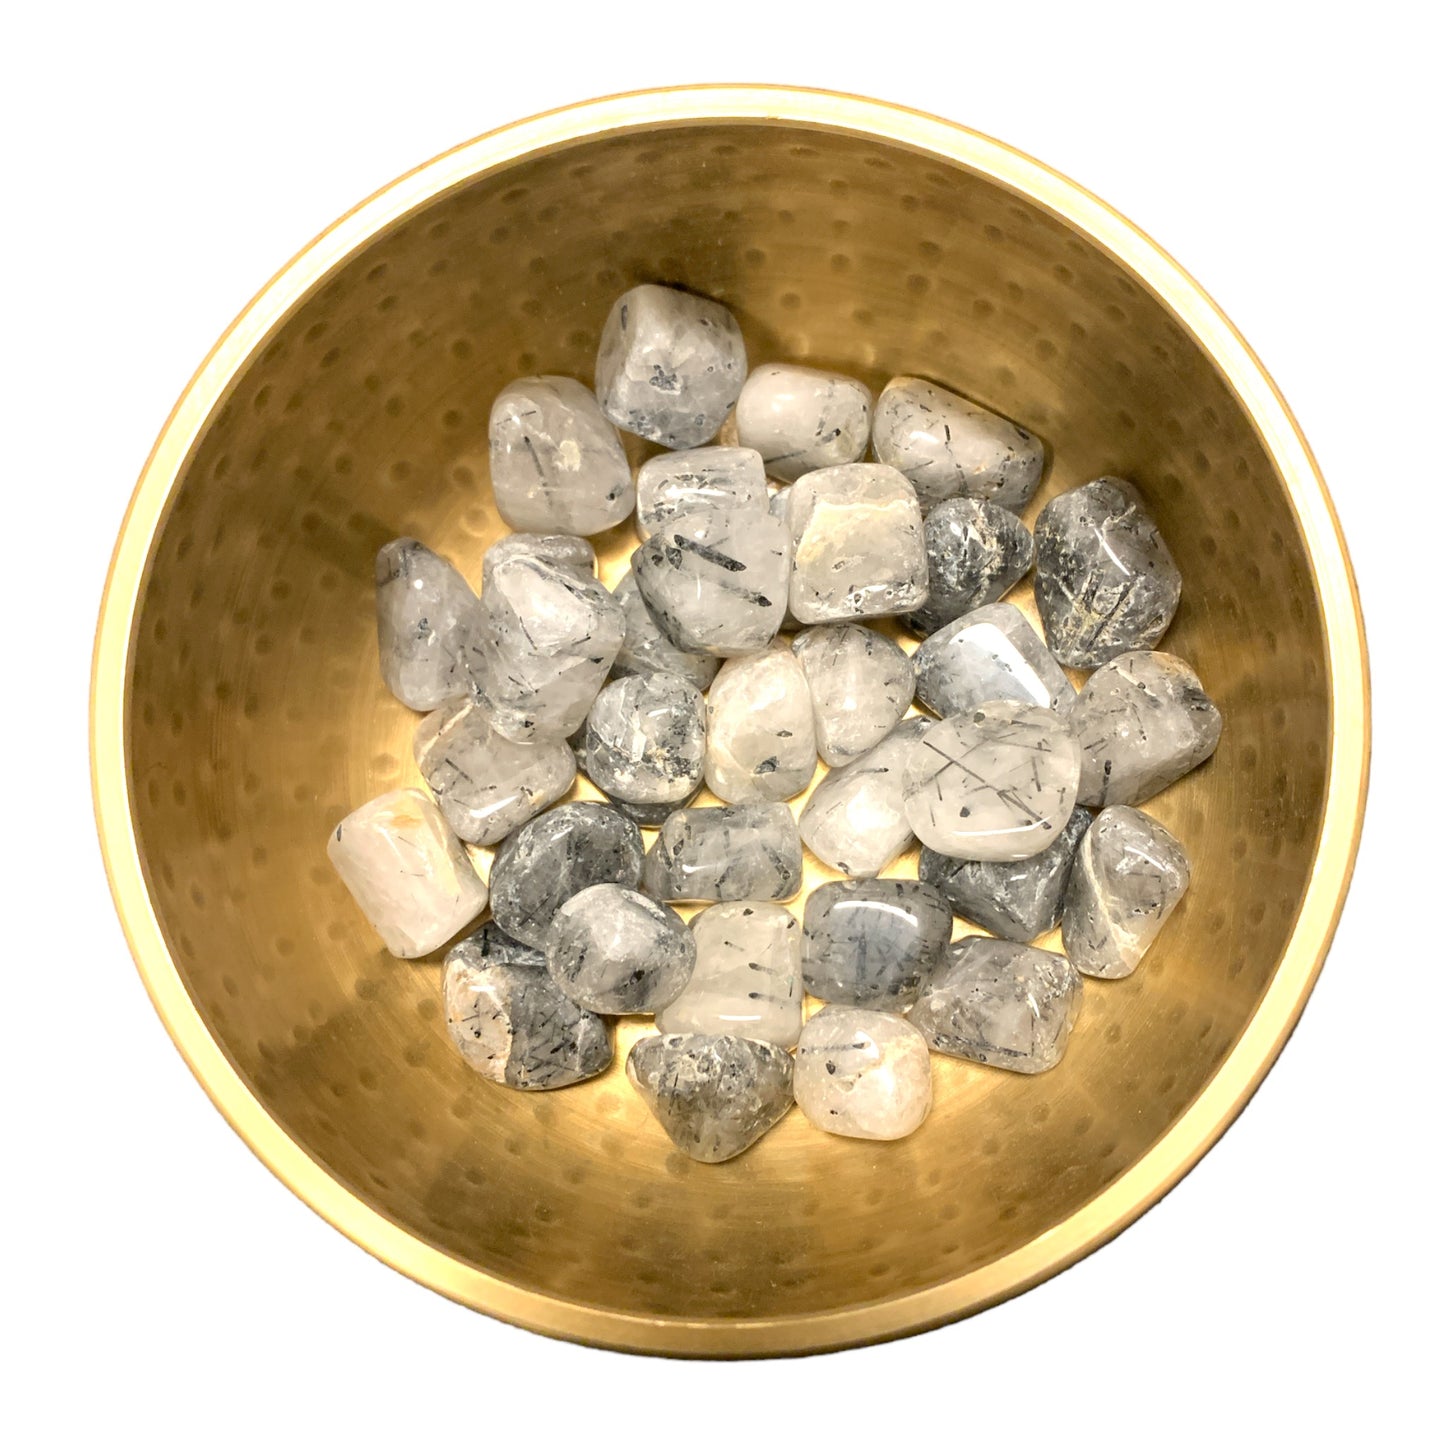 Black Rutilated Quartz Tumbled Stones - Medium 20 - 25 mm - 500 grams - India